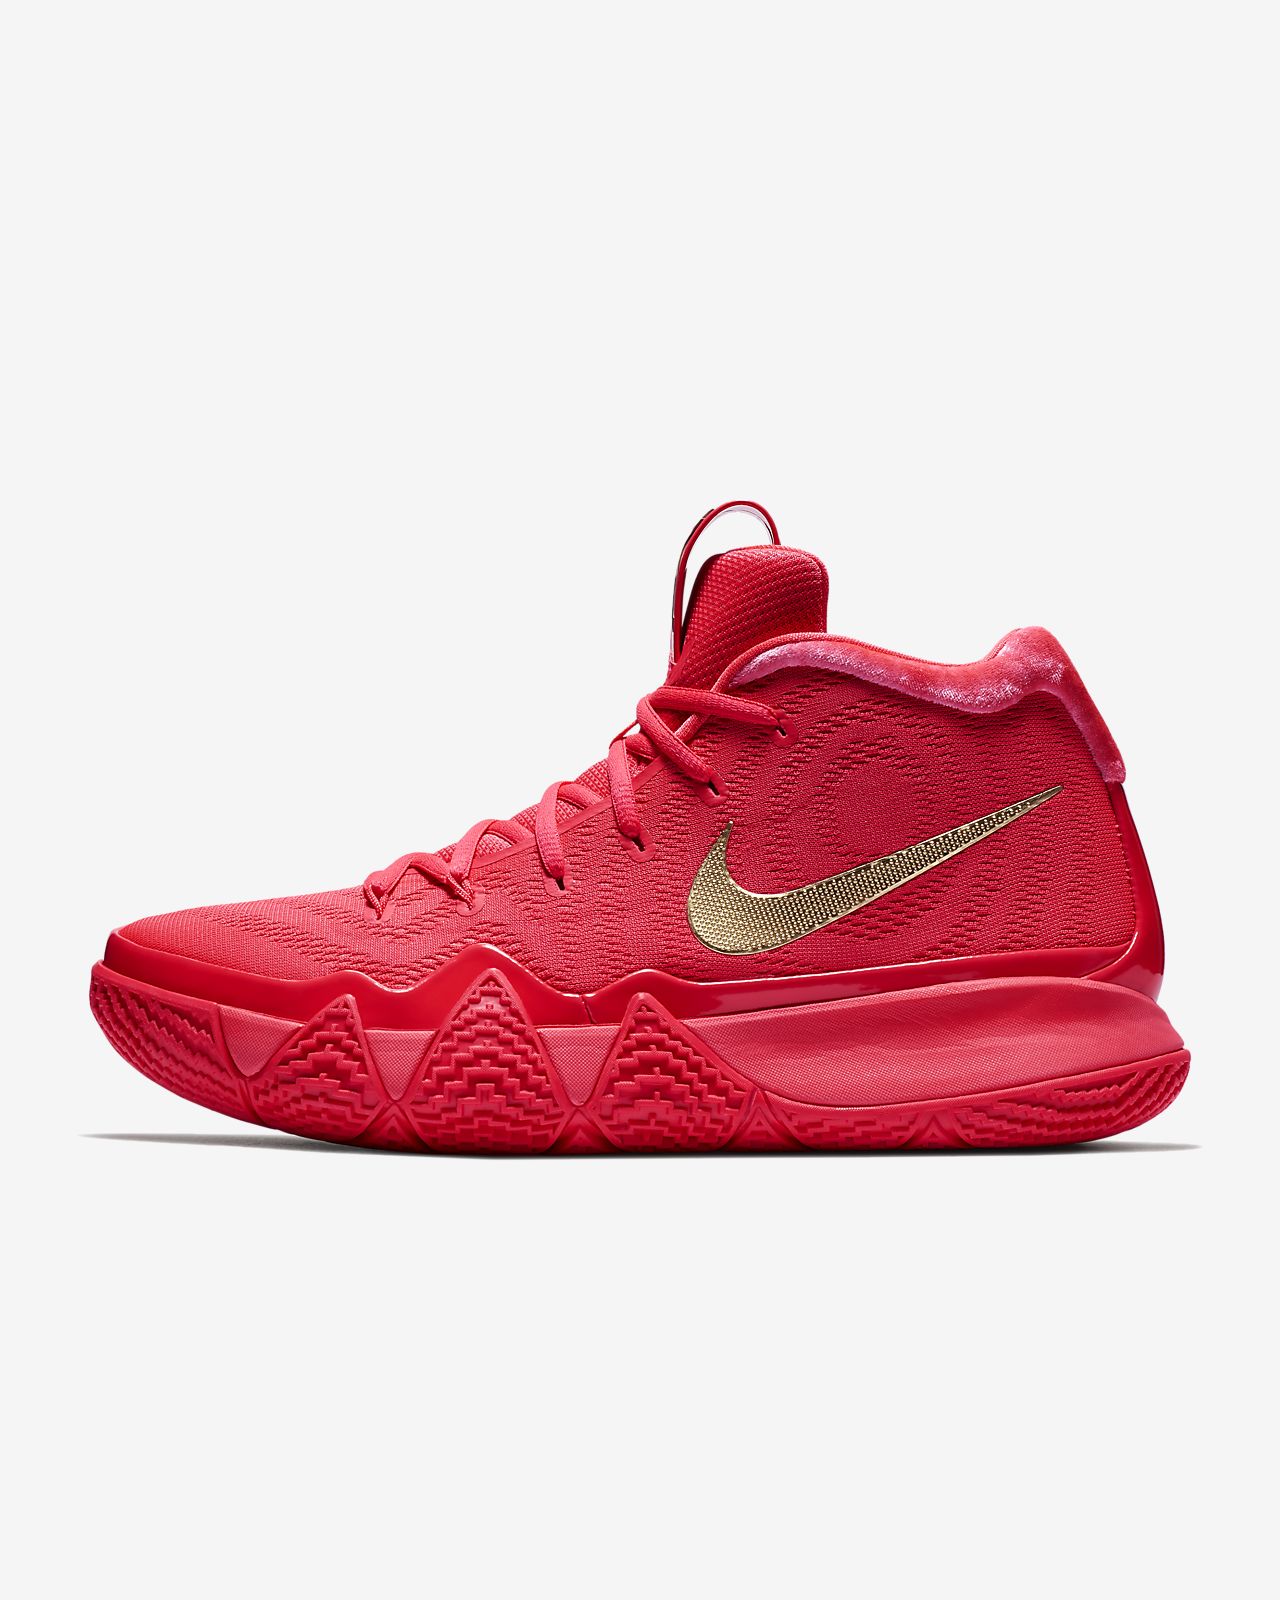 Kyrie 4 Basketball Shoe. Nike SG